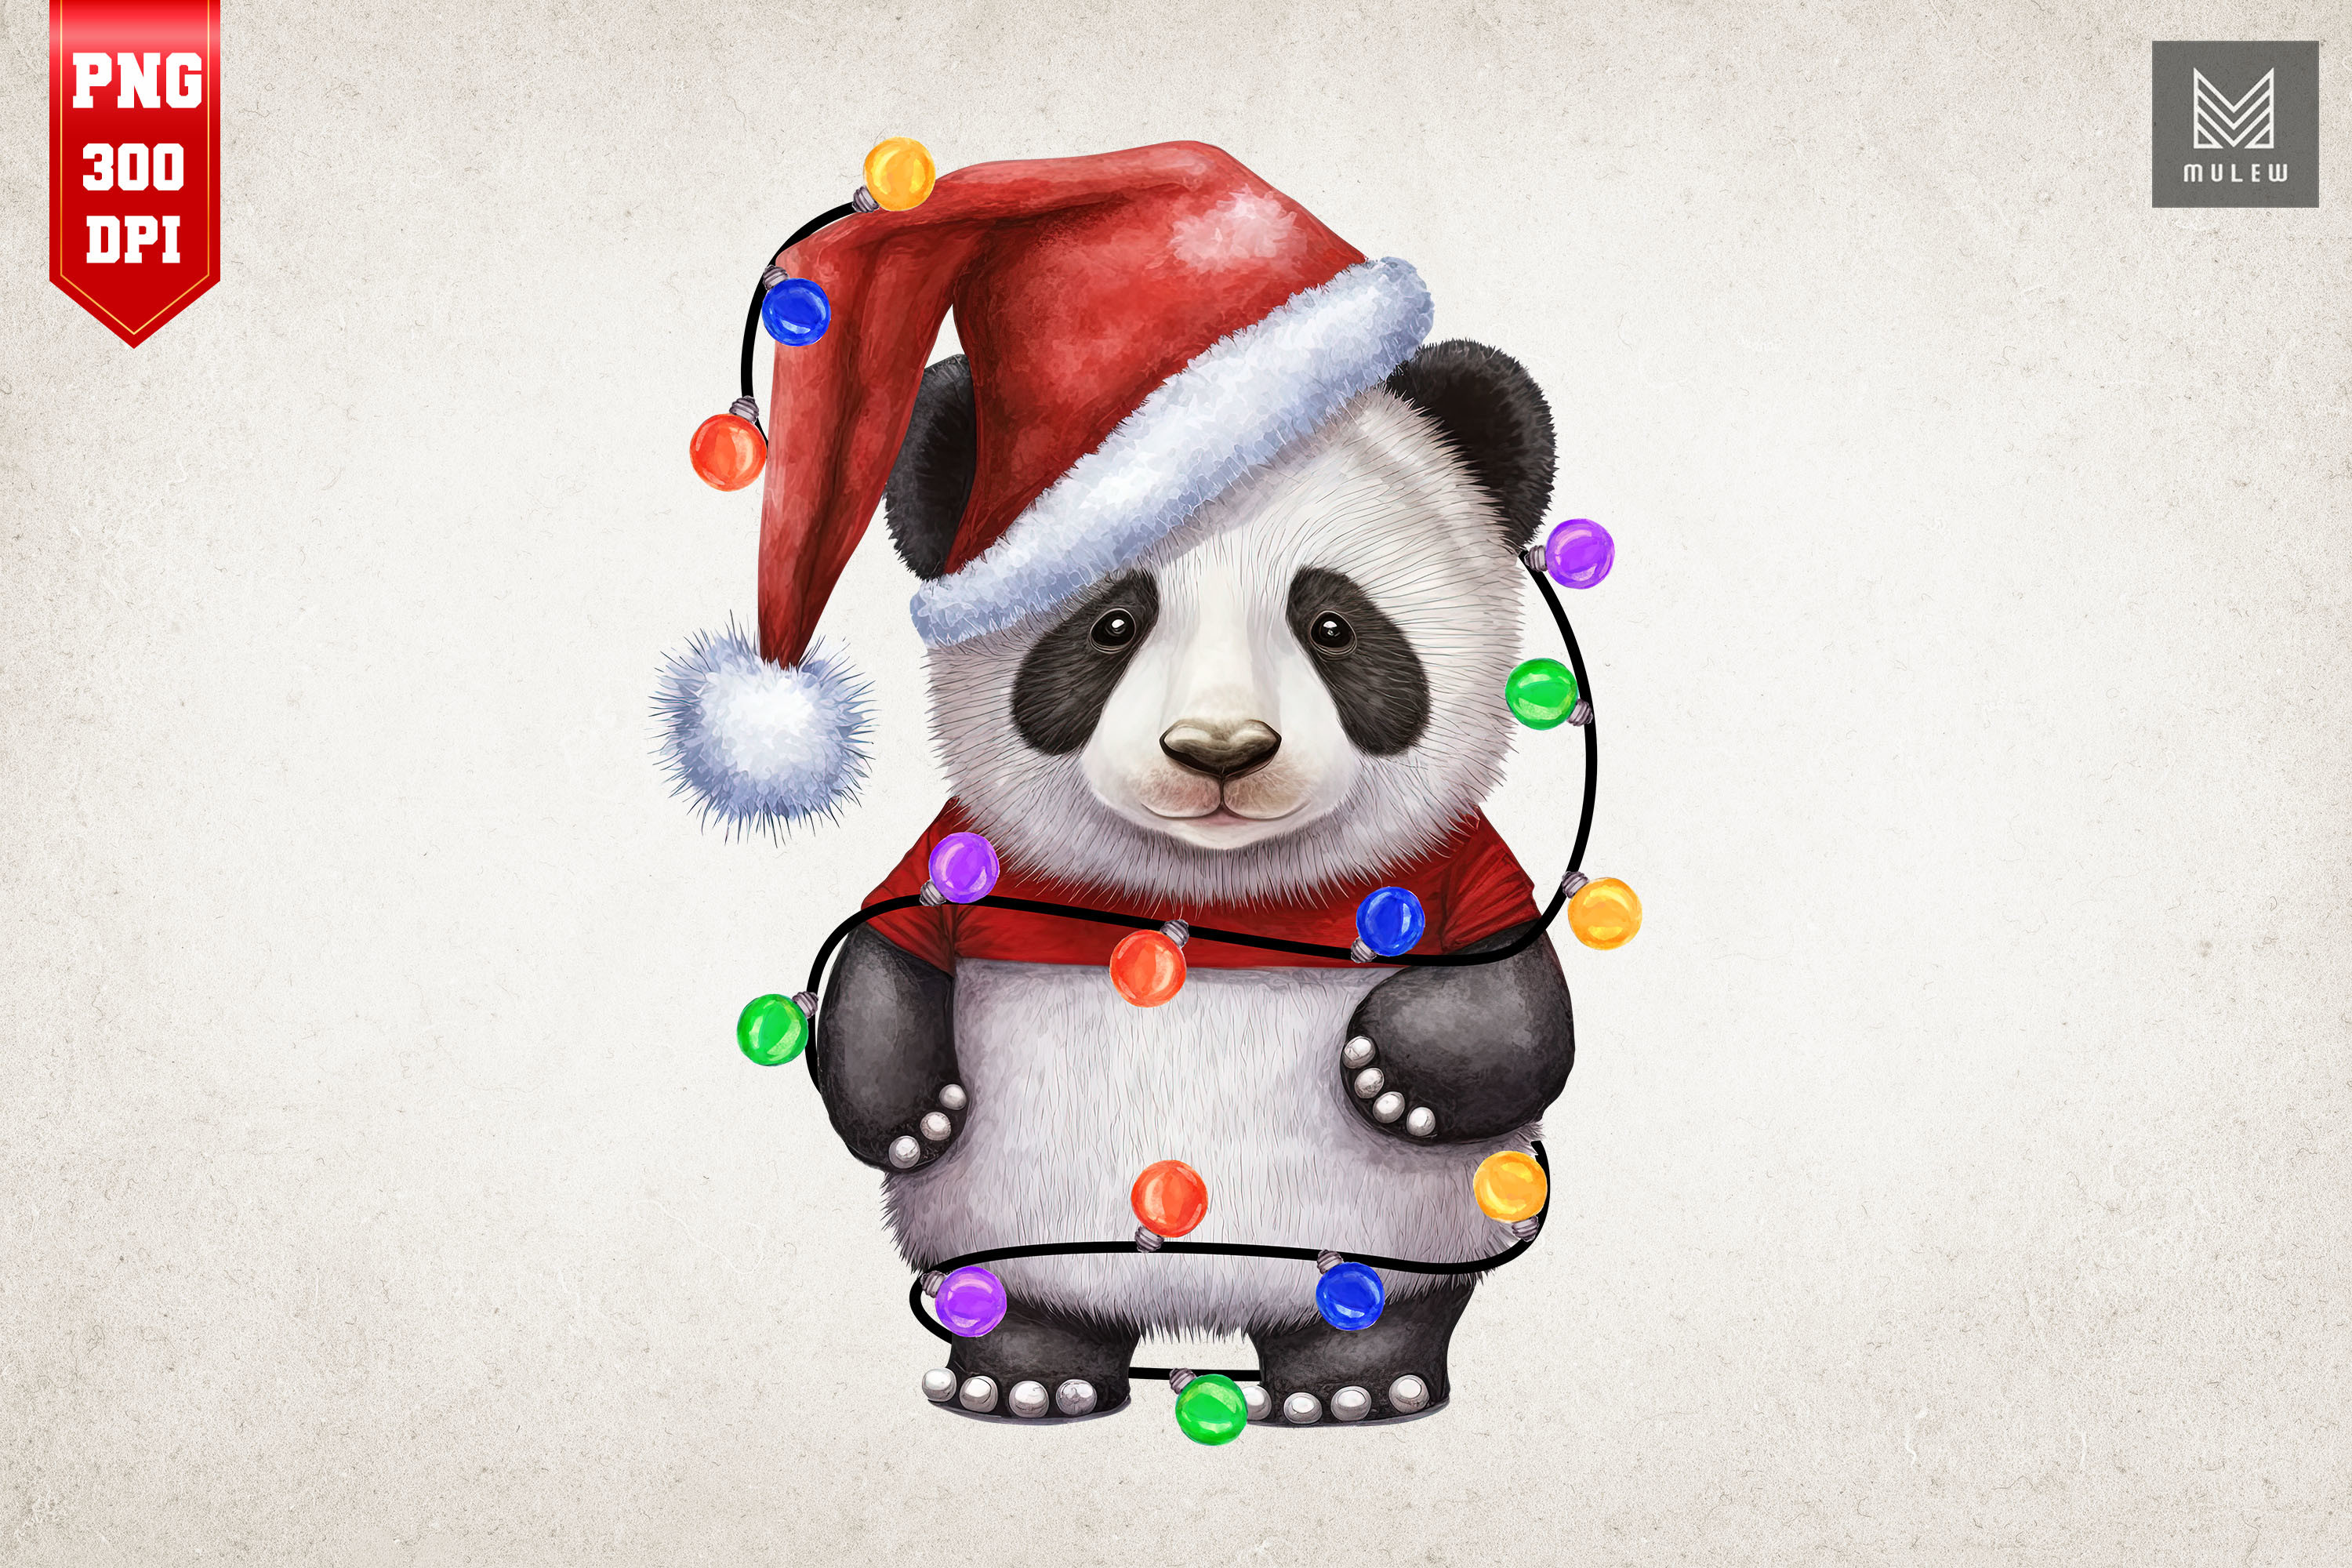 Christmas Panda Wallpapers